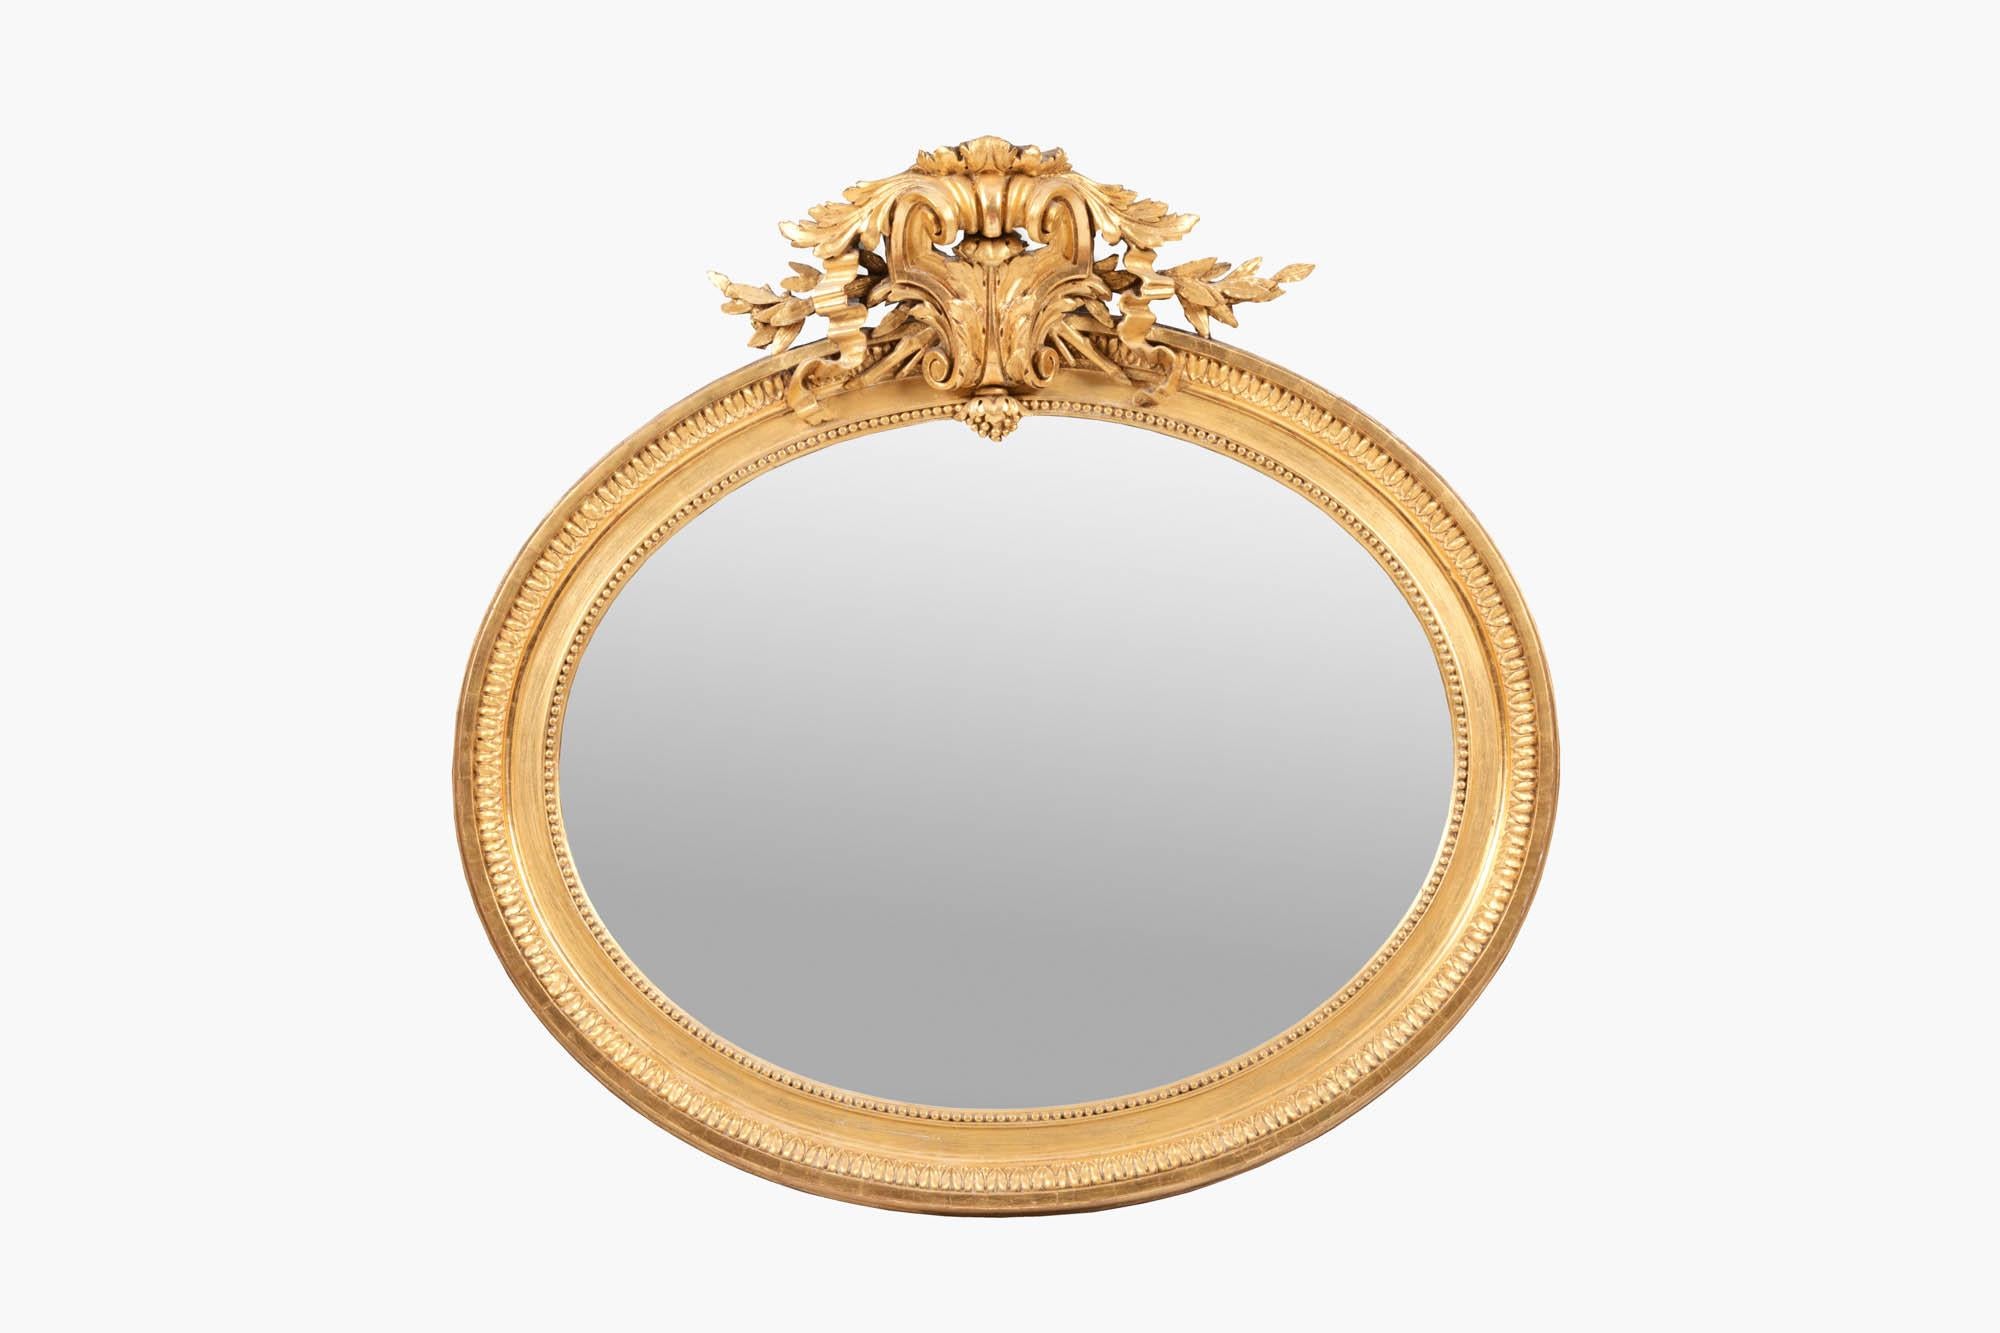 Miroir ovale doré du 19ème siècle. Le cadre est sculpté d'un motif en forme d'œuf et de fléchette alternant avec des filets convexes et une boucle intérieure en perles dorées. En haut, le cadre est décoré d'un grand cartouche comportant des feuilles